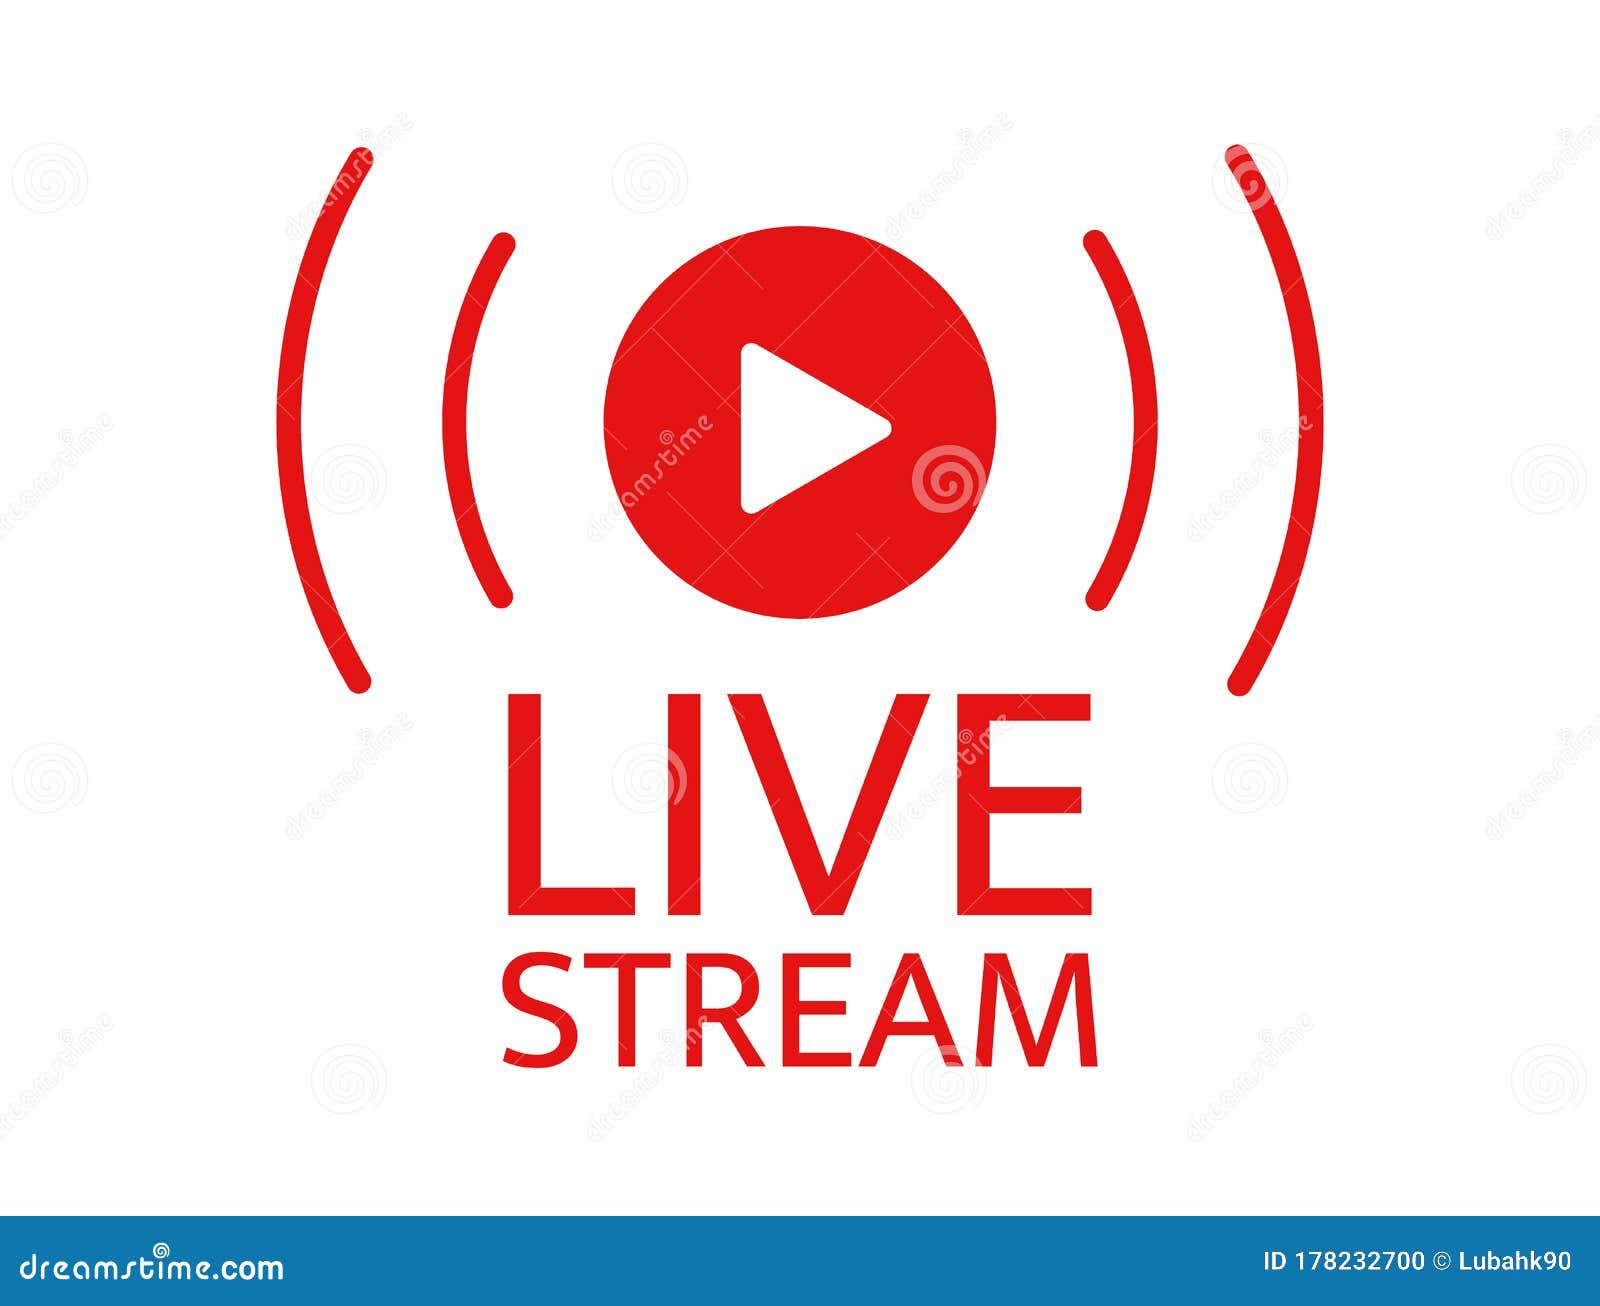 Cnbc Live Stream Free